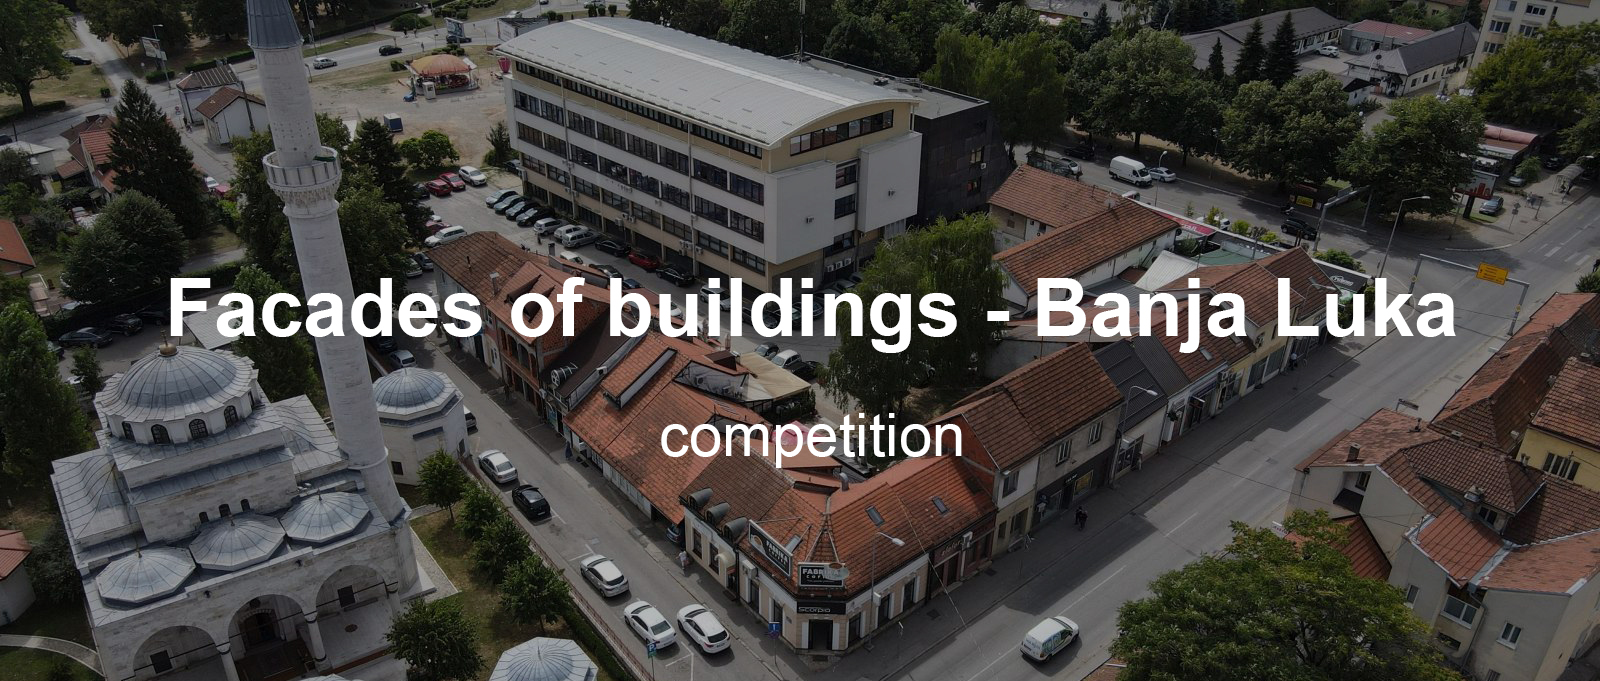 巴尼亚卢卡建筑立面概念设计竞赛